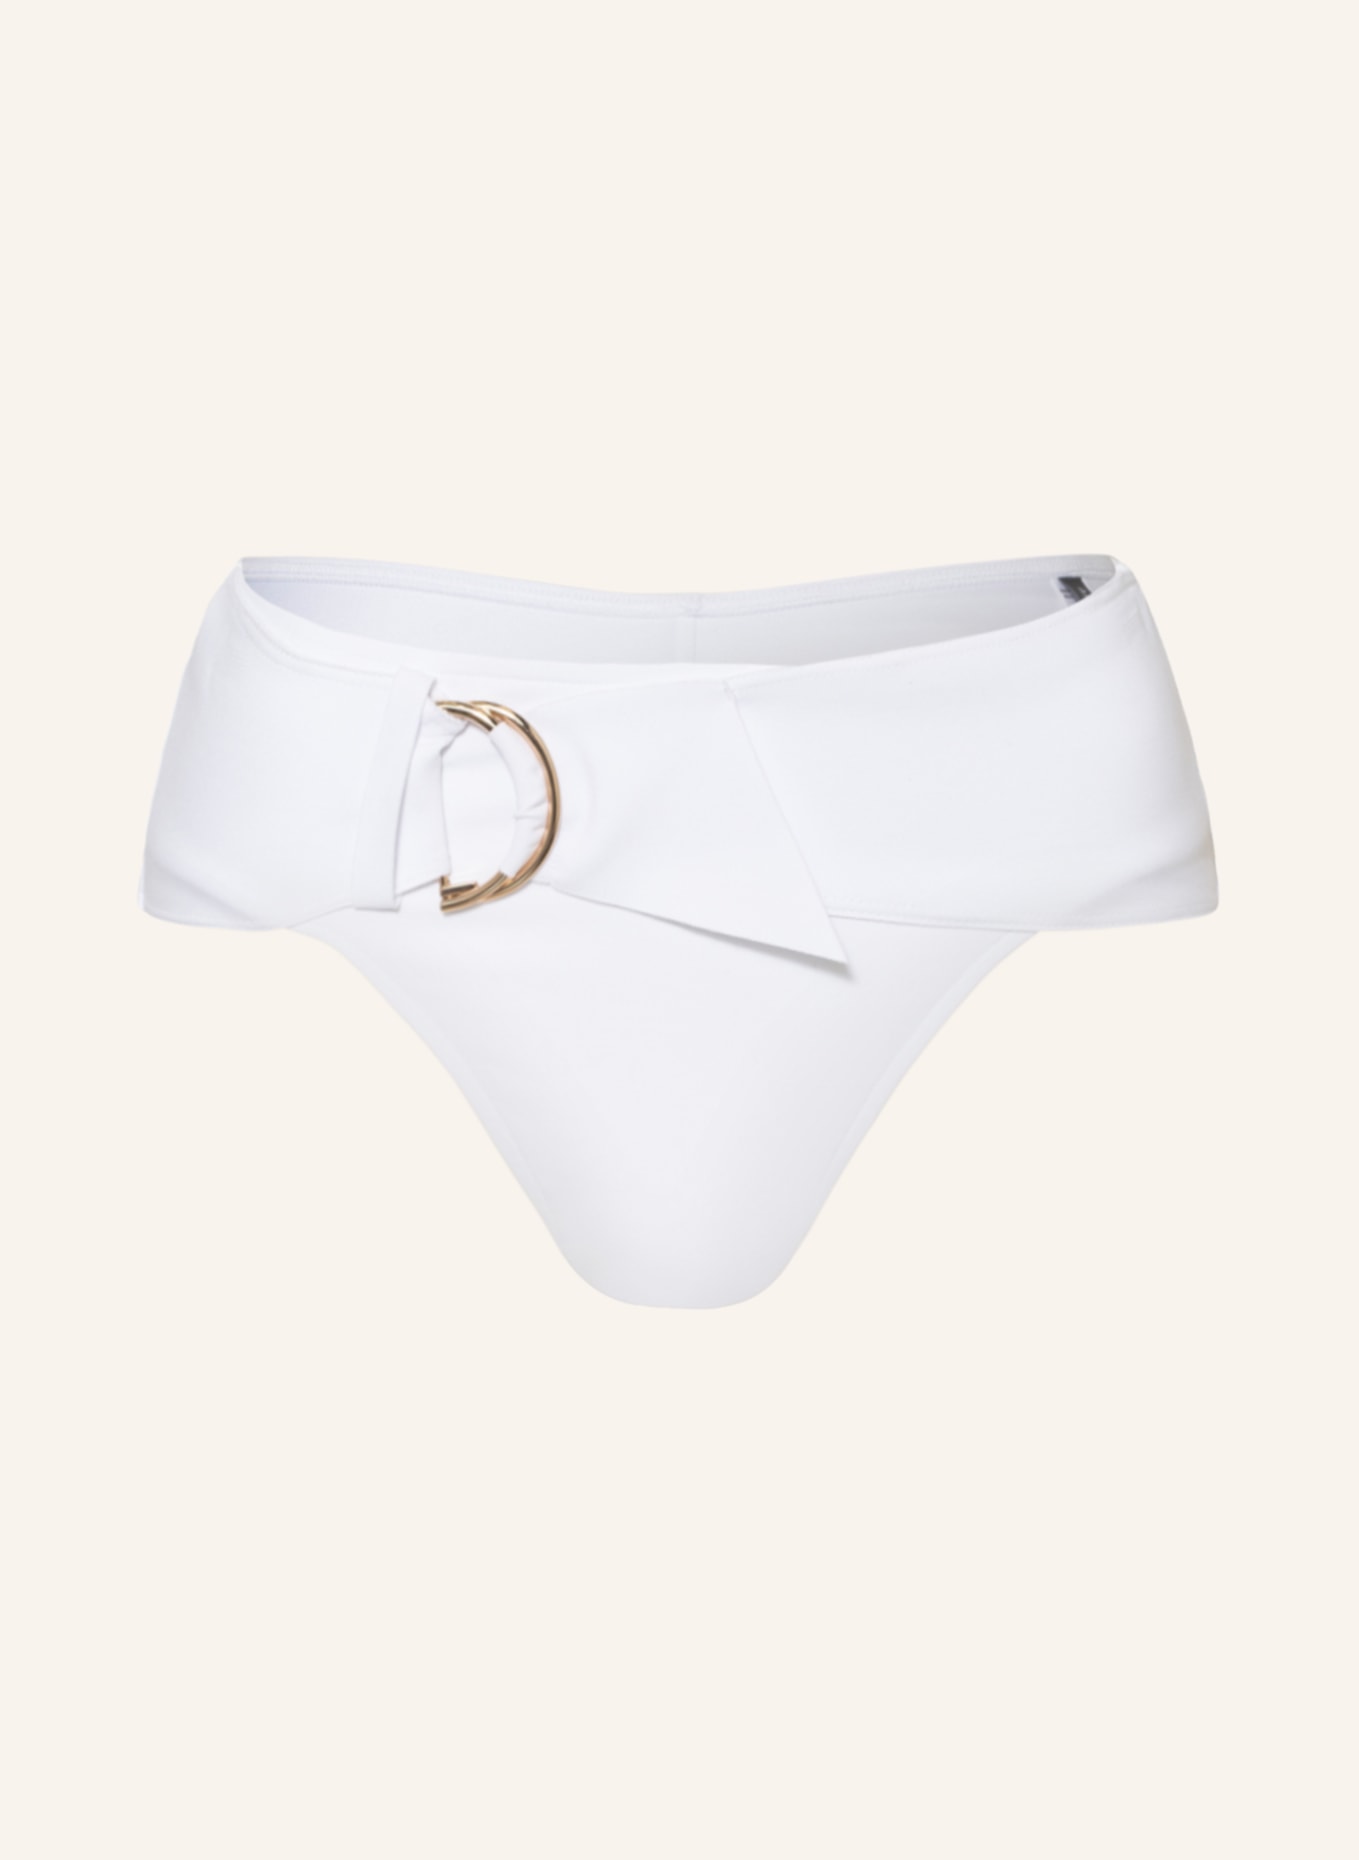 ANDRES SARDA Basic bikini bottoms MARYLIN, Color: WHITE (Image 1)